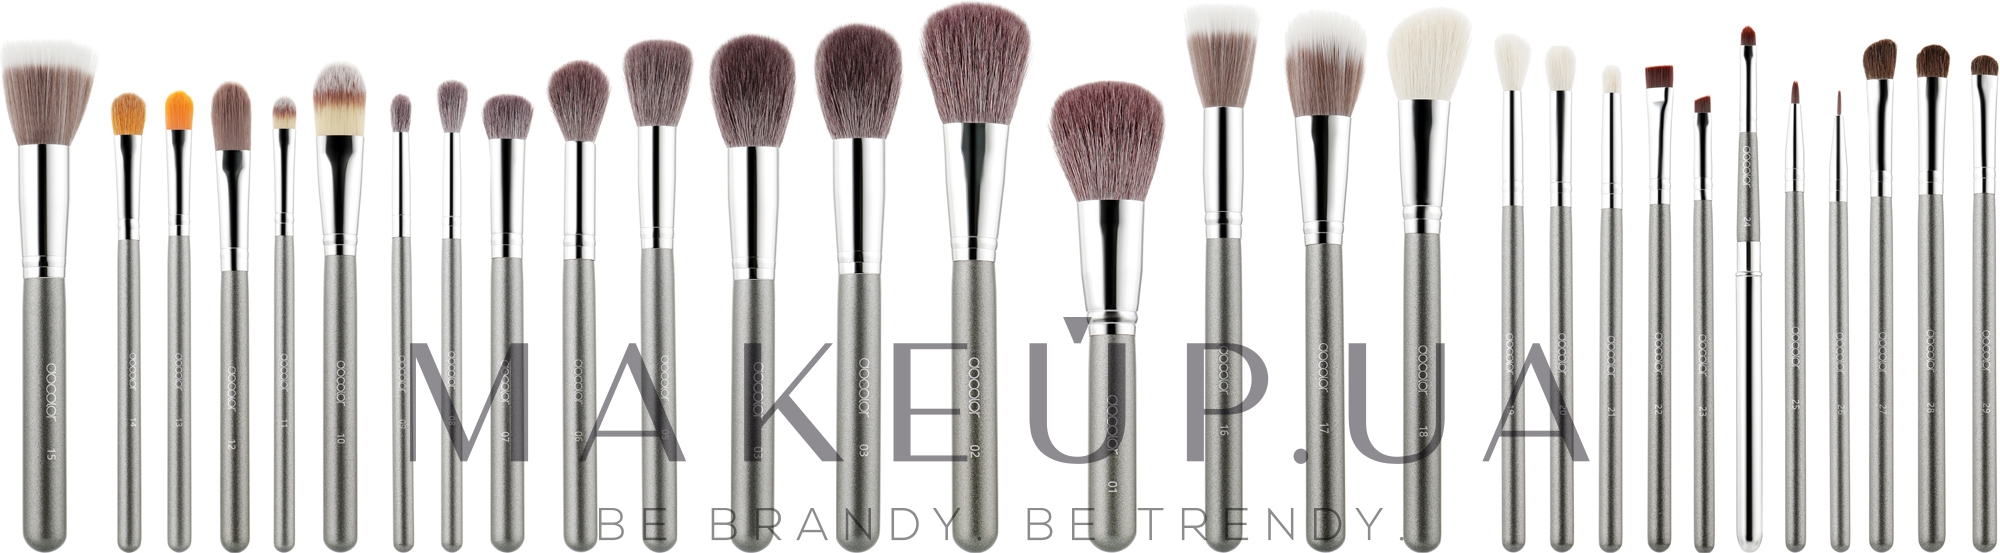 Набор кистей для макияжа, 29 шт. - Dcolor Makeup Brush Set — фото 28шт